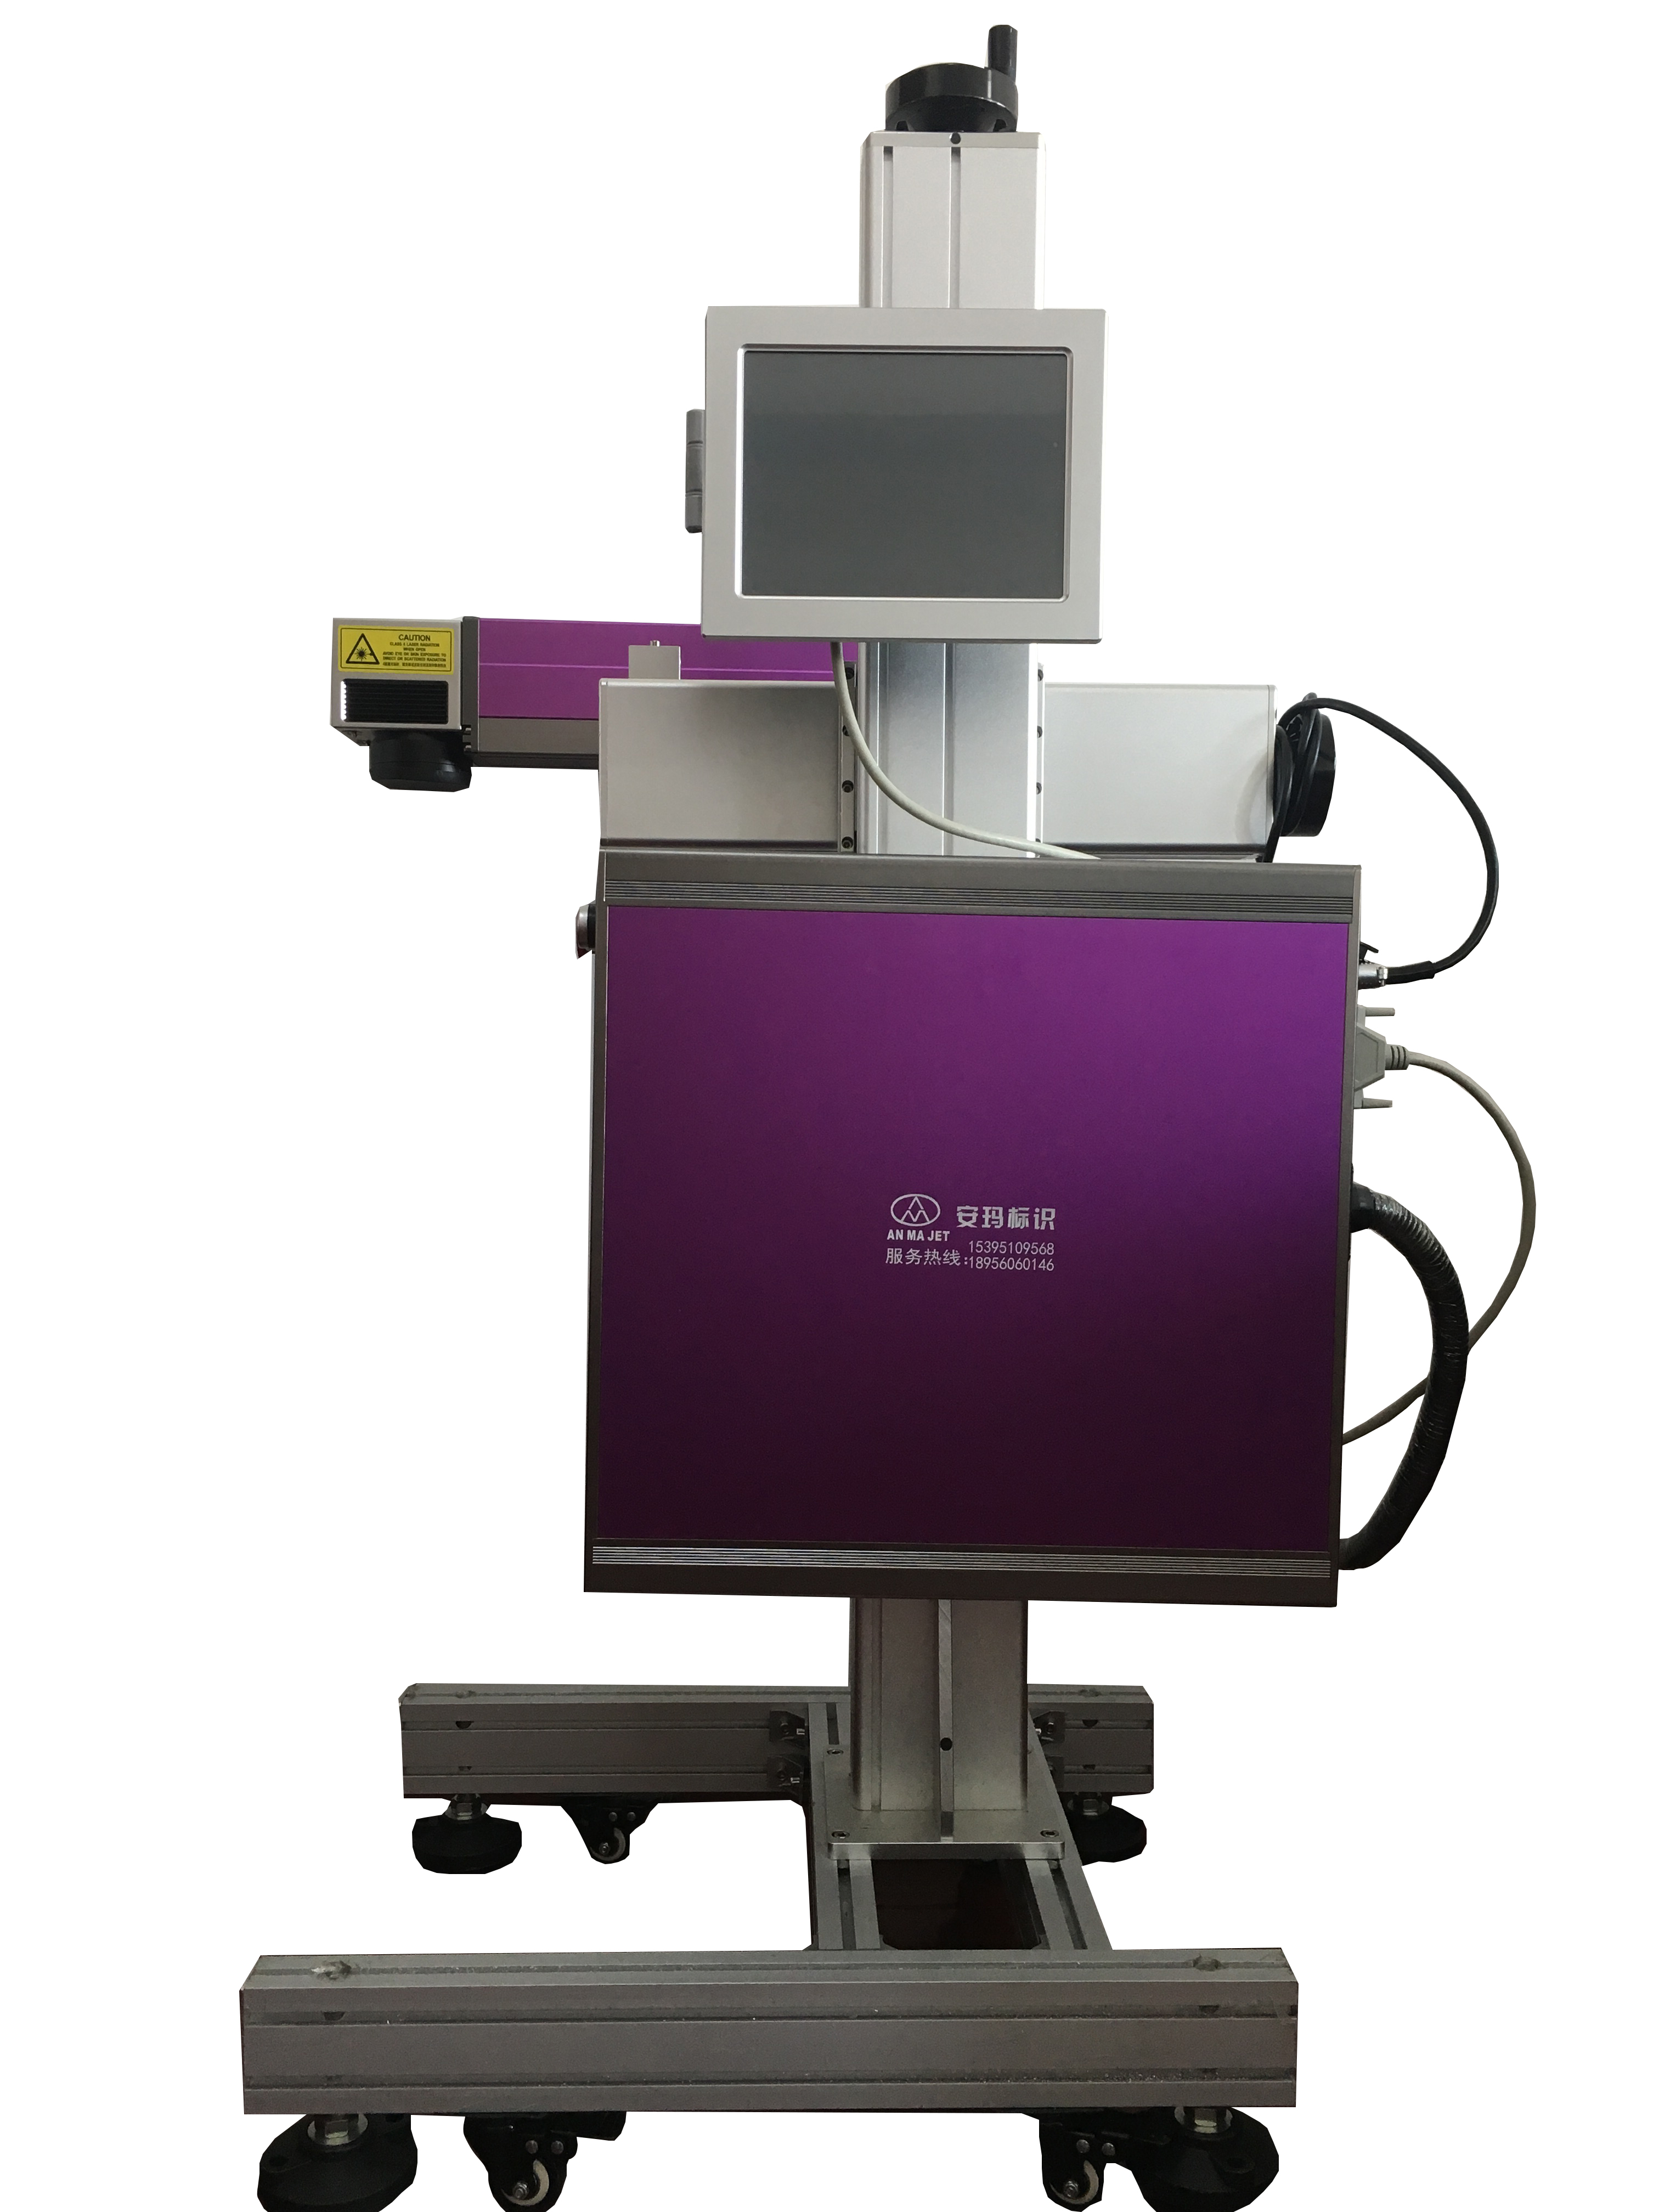 AM紫罗兰系列光纤激光喷码机(图1)